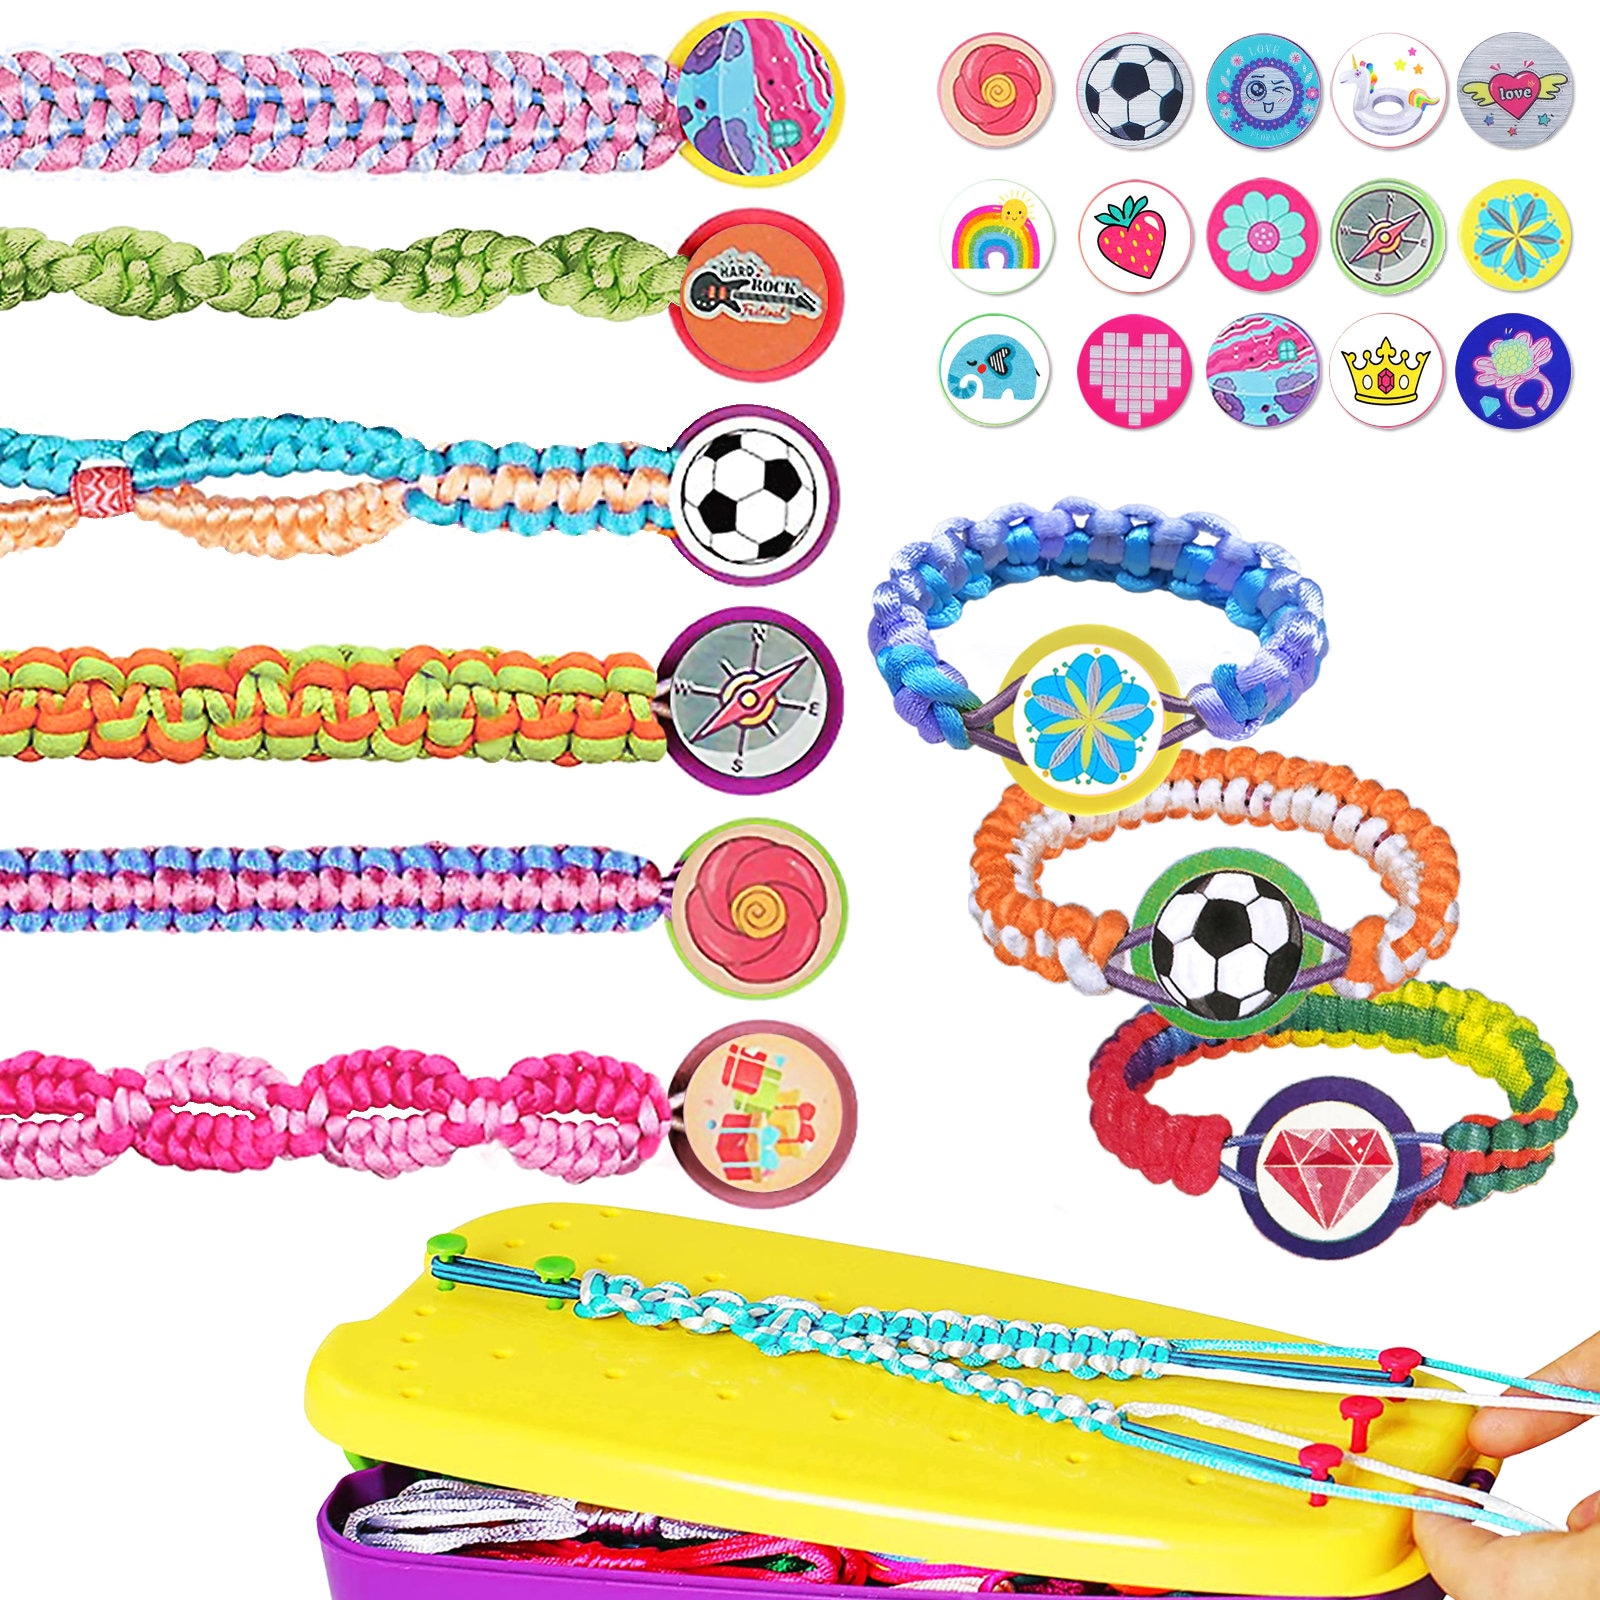 Bracelet Making Kit Toys for for Teen Girls, Ages 6 7 8 9 10 11 12